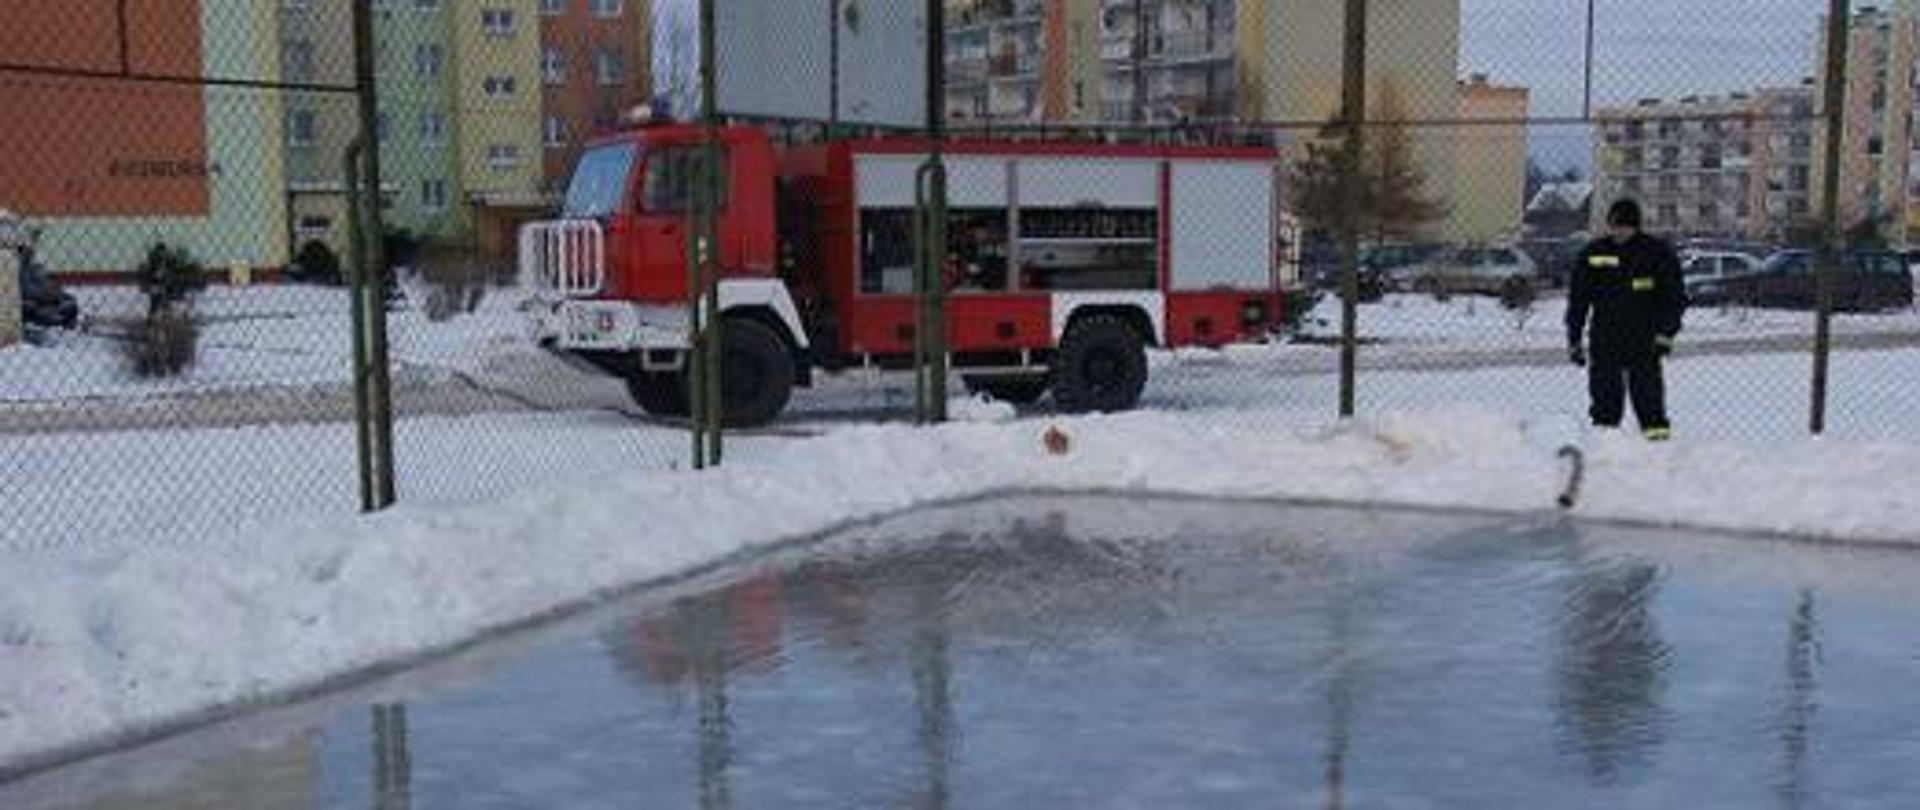 Zdjęcie porady bezpieczeństwo dzieci podczas ferii - samochód pożarniczy i lodowisko a przy nim strażak